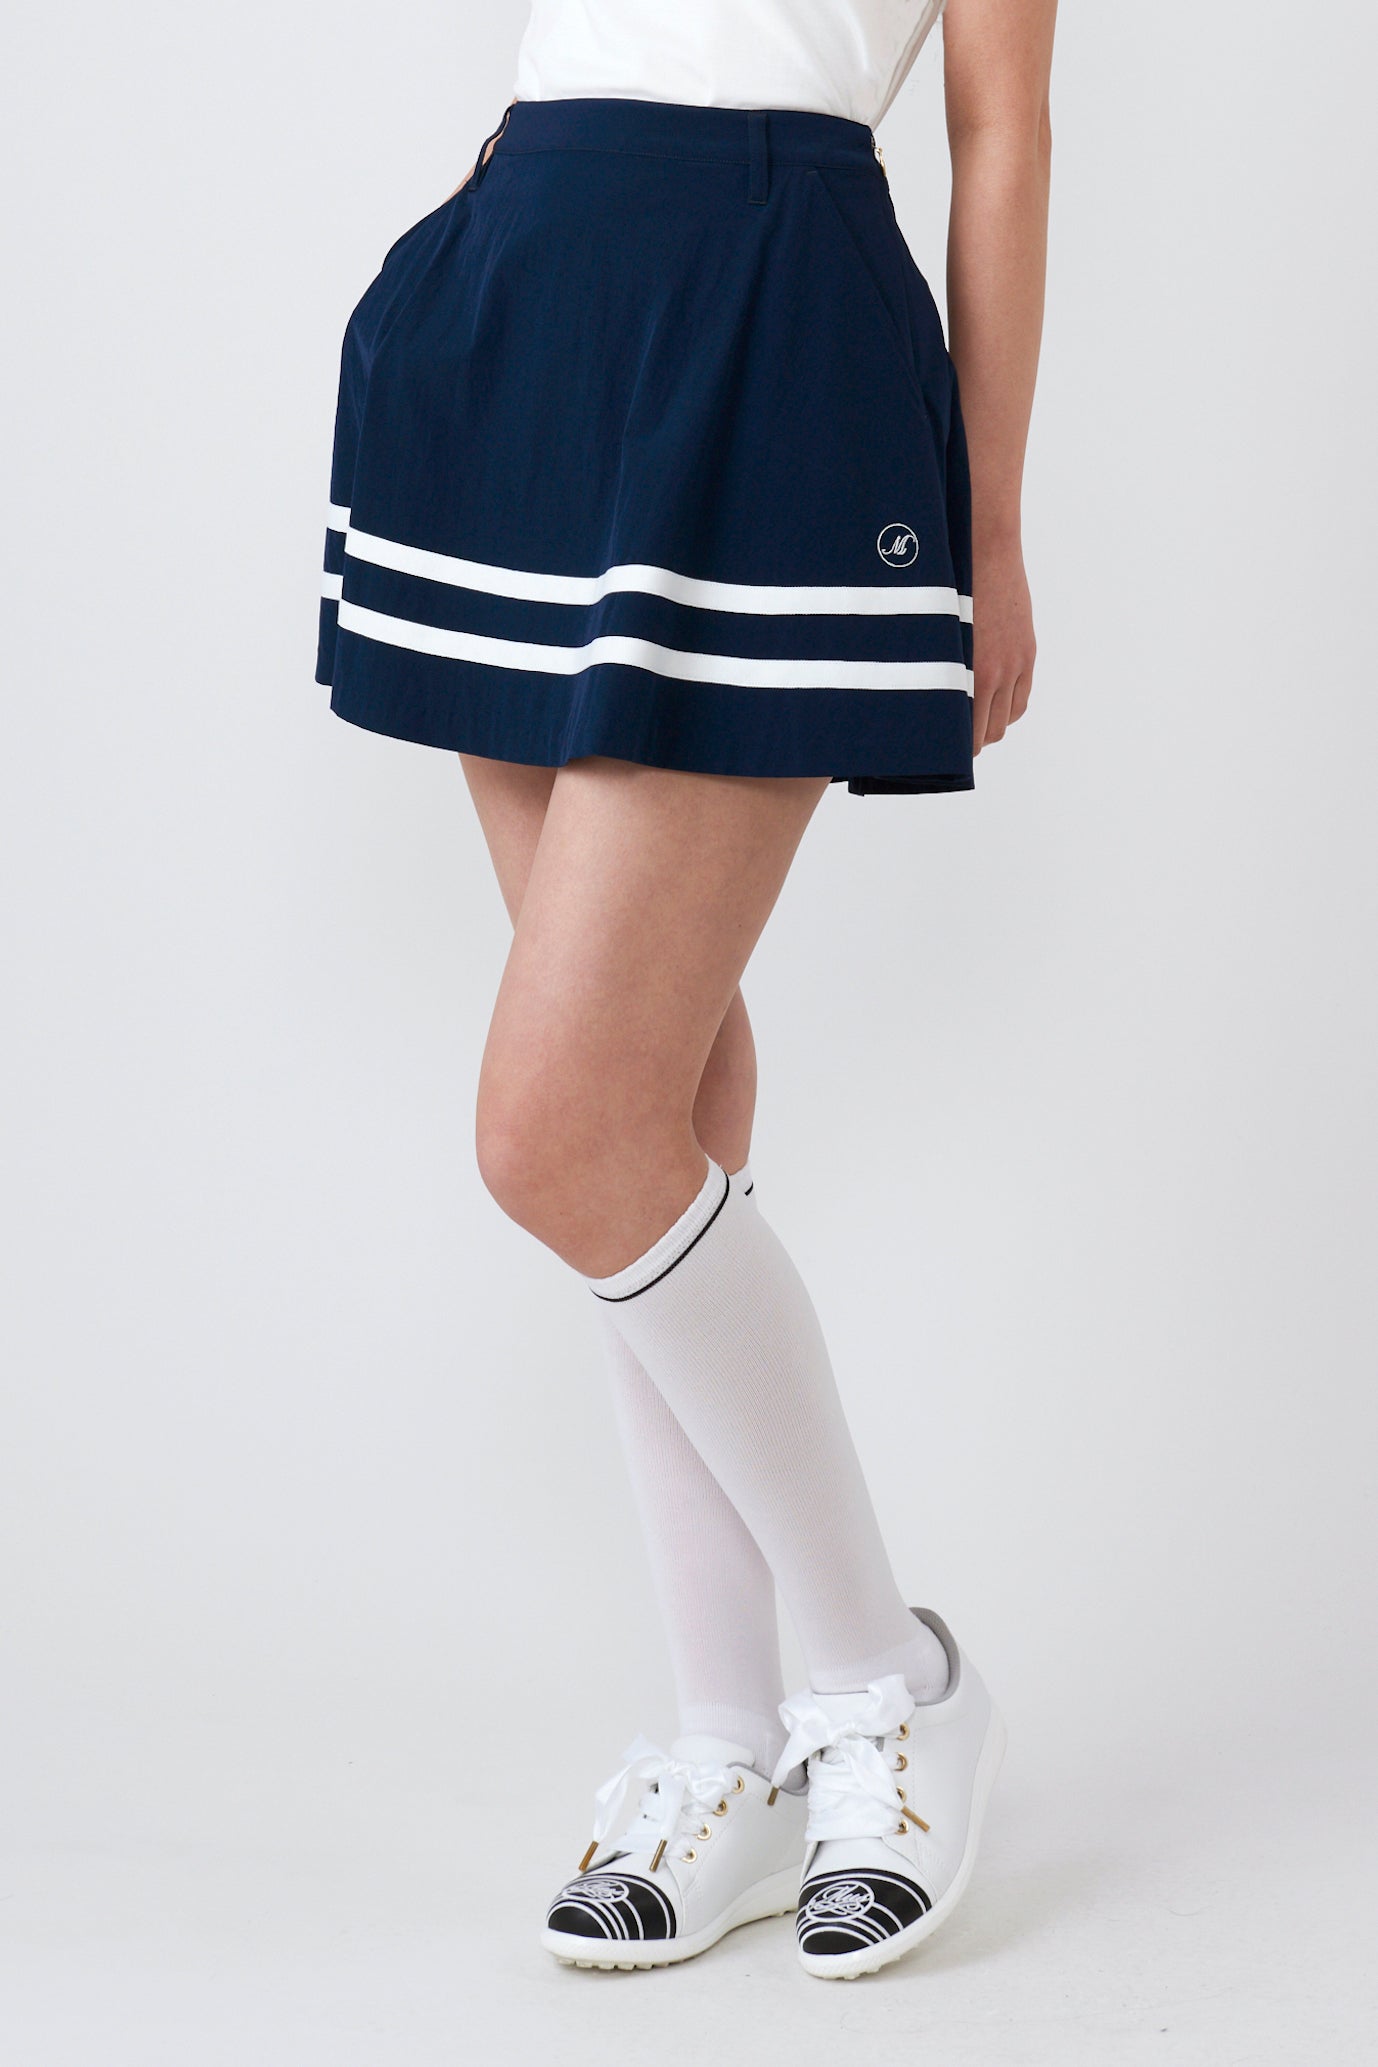 Line detail flare skirt (701J2506)